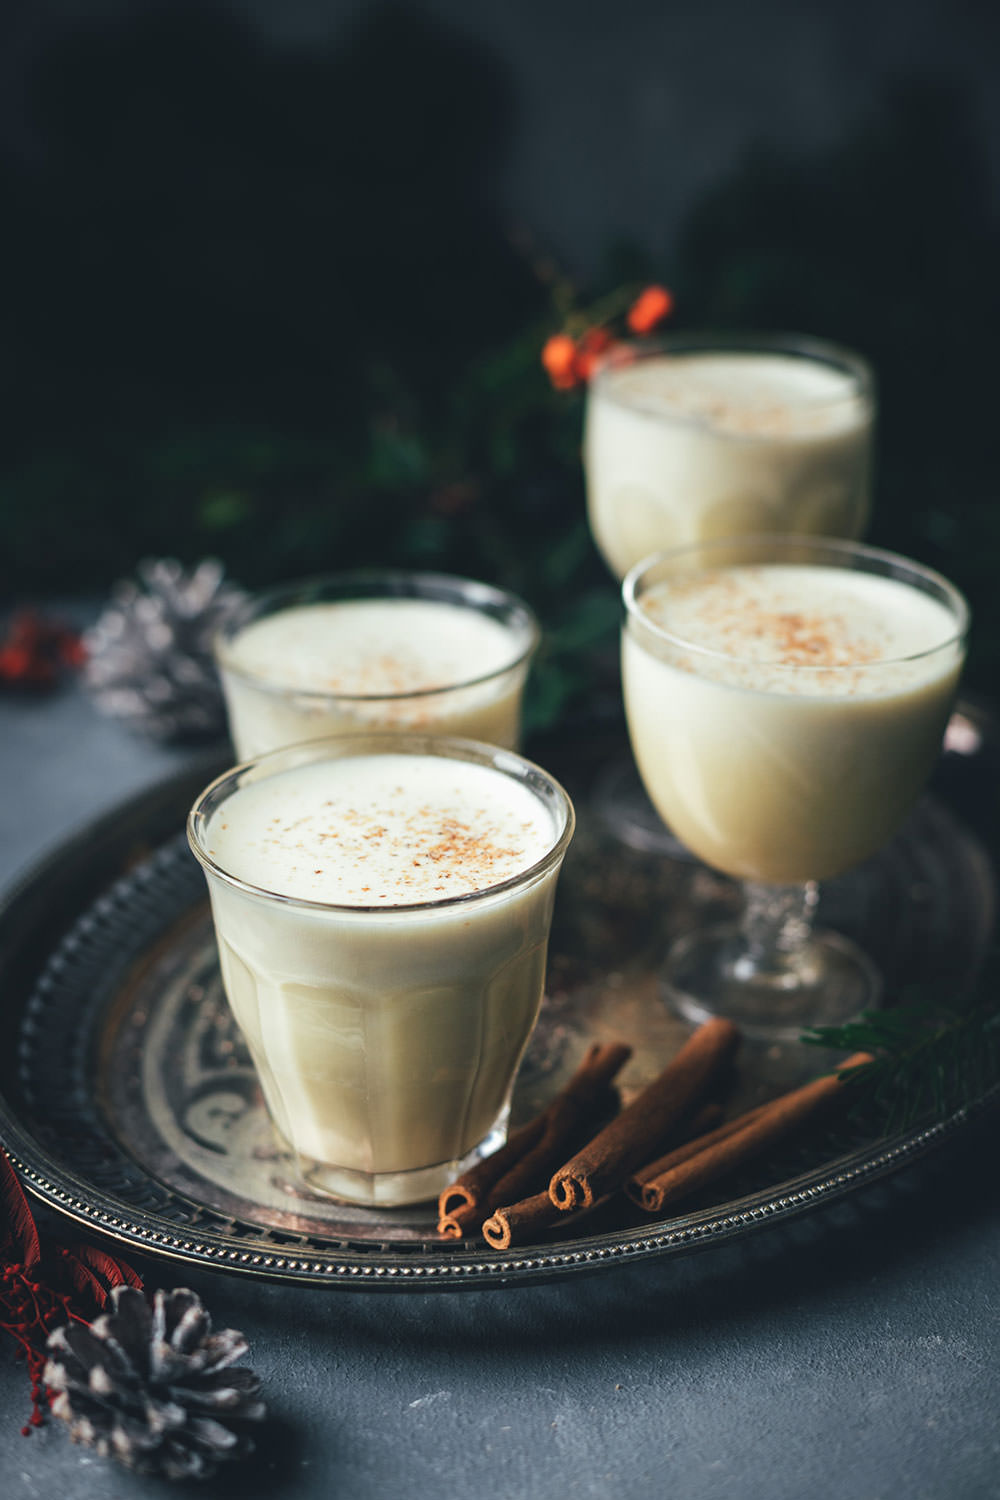 Rezept für warmen Eggnog | amerikanischer Eierpunsch, der hervorragend zu Weihnachten passt | Weihnachtspunsch ist mit oder ohne Alkohol möglich | zur Zubereitung im Topf oder Thermomix | moeyskitchen.com #rezepte #eggnog #eierpunsch #drink #heißgetränke #weihnachten #weihnachtszeit #foodbloger #foodblog #weihnachtsrezept #weihnachtspunsch #rezept #foodbloggeradventskalender